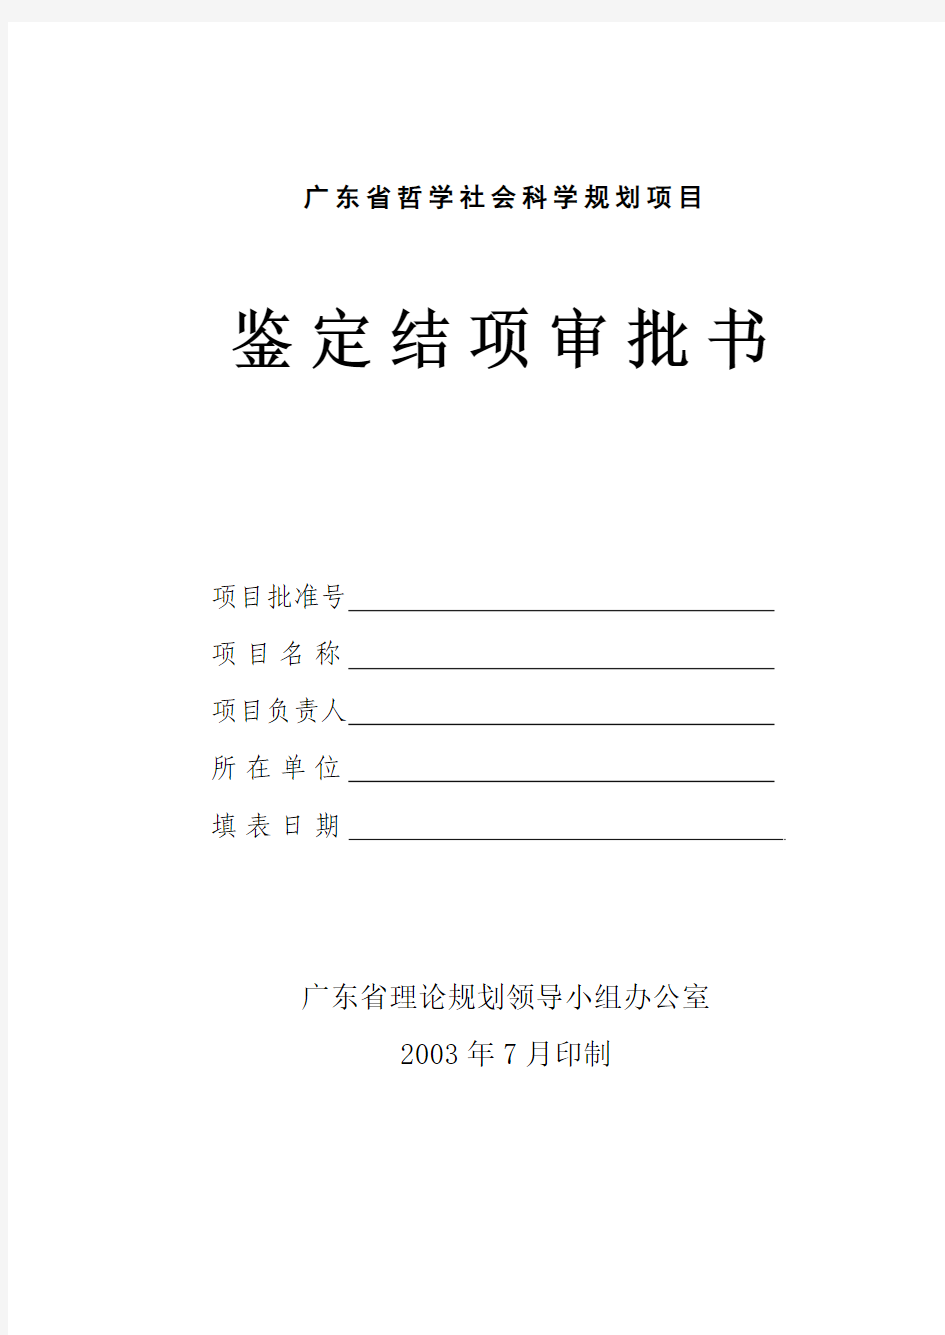 广东省哲学社会科学规划项目鉴定结项审批书